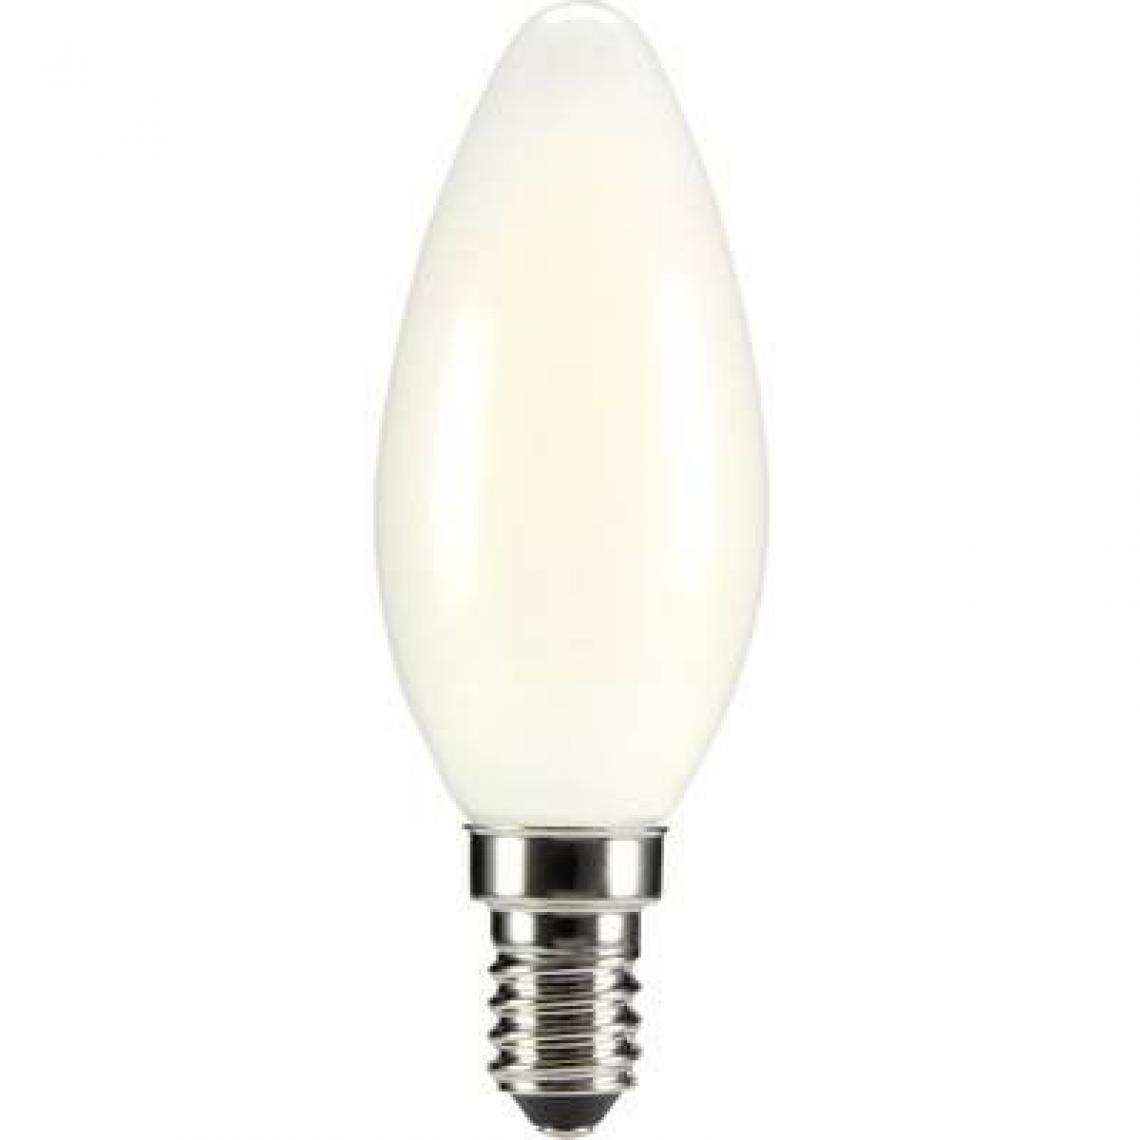 Inconnu - Ampoule LED E14 Sygonix STC3004softwhite en forme de bougie 4 W = 35 W blanc chaud (Ø x L) 35 mm x 99 mm EEC: classe A++ - Ampoules LED